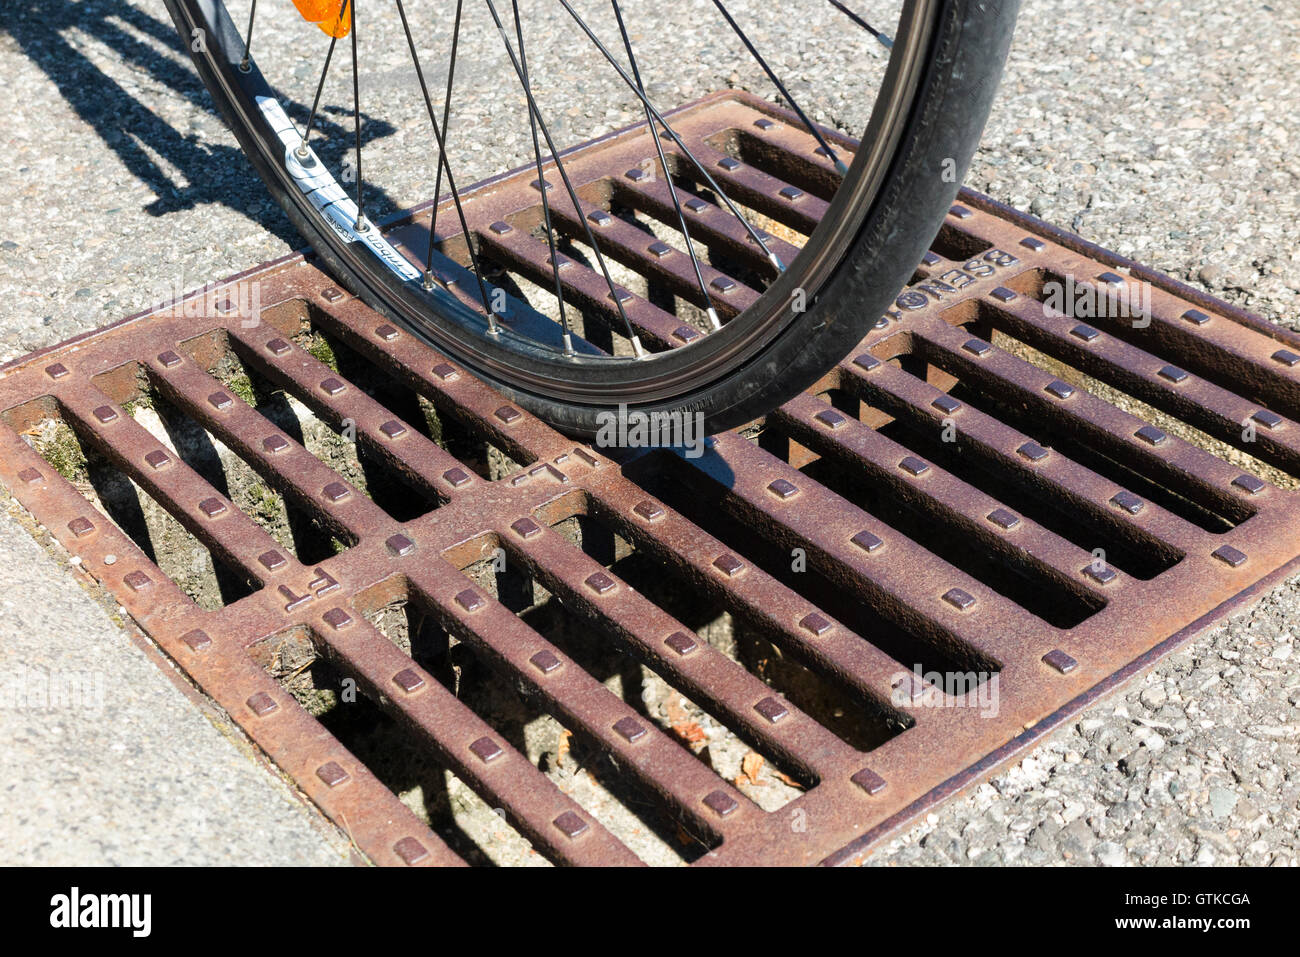 Rennrad Fahrrad fahren Rad das gesteckt hat in ein Abfluss Gitter Eisen Cover mit Schlitze in die Richtung der Rinne platziert. Stockfoto